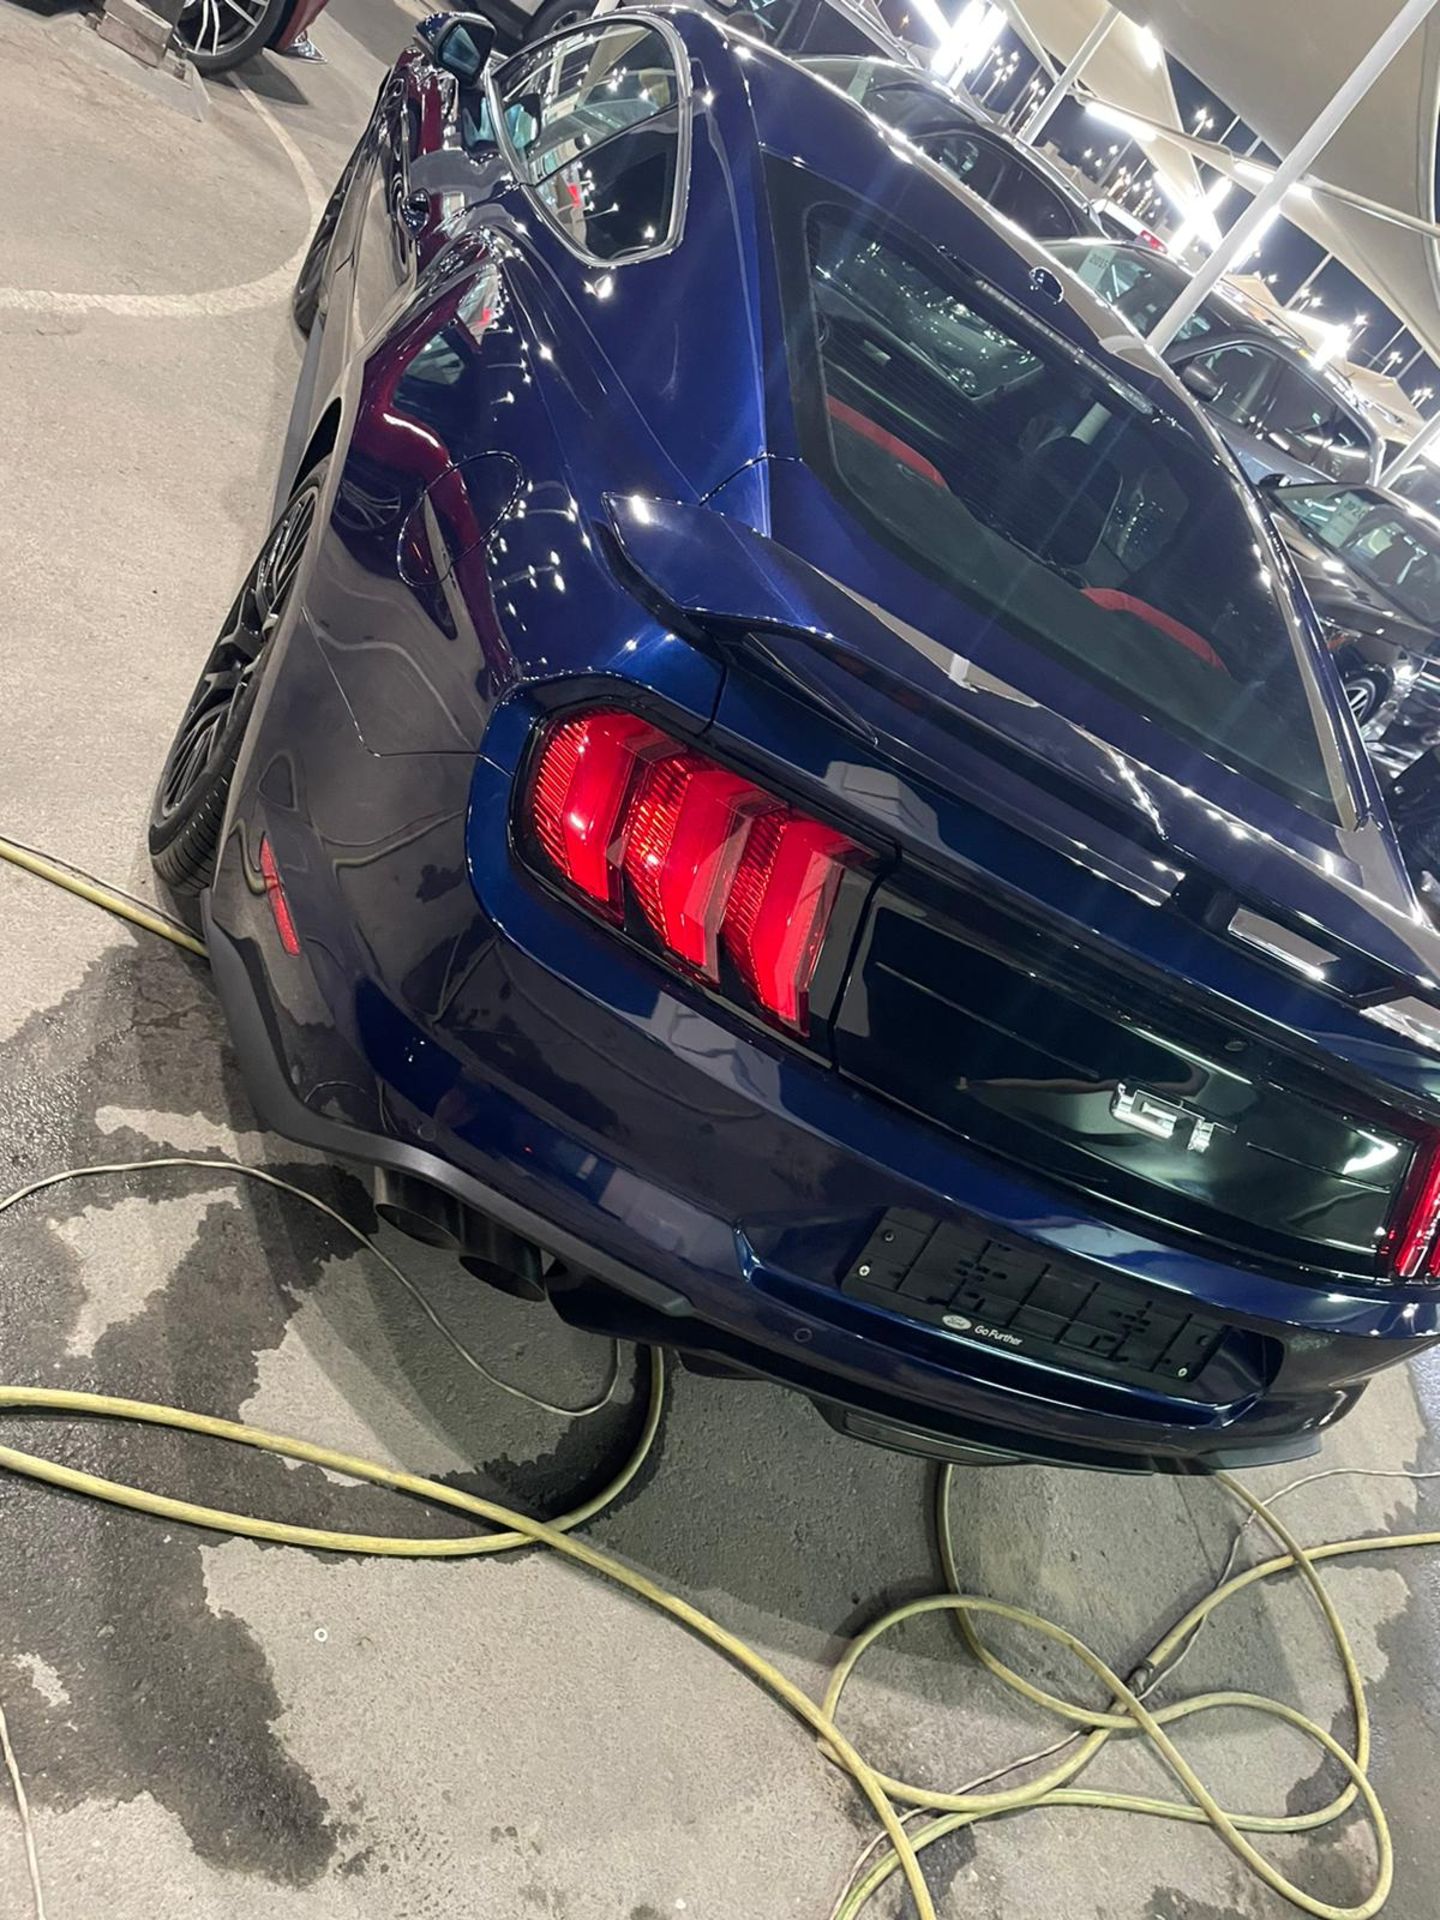 2019 mustang gt 5.0 V8 Shelby body kit 15,000 km. Uk mid APRIL With nova *PLUS VAT* - Image 3 of 9